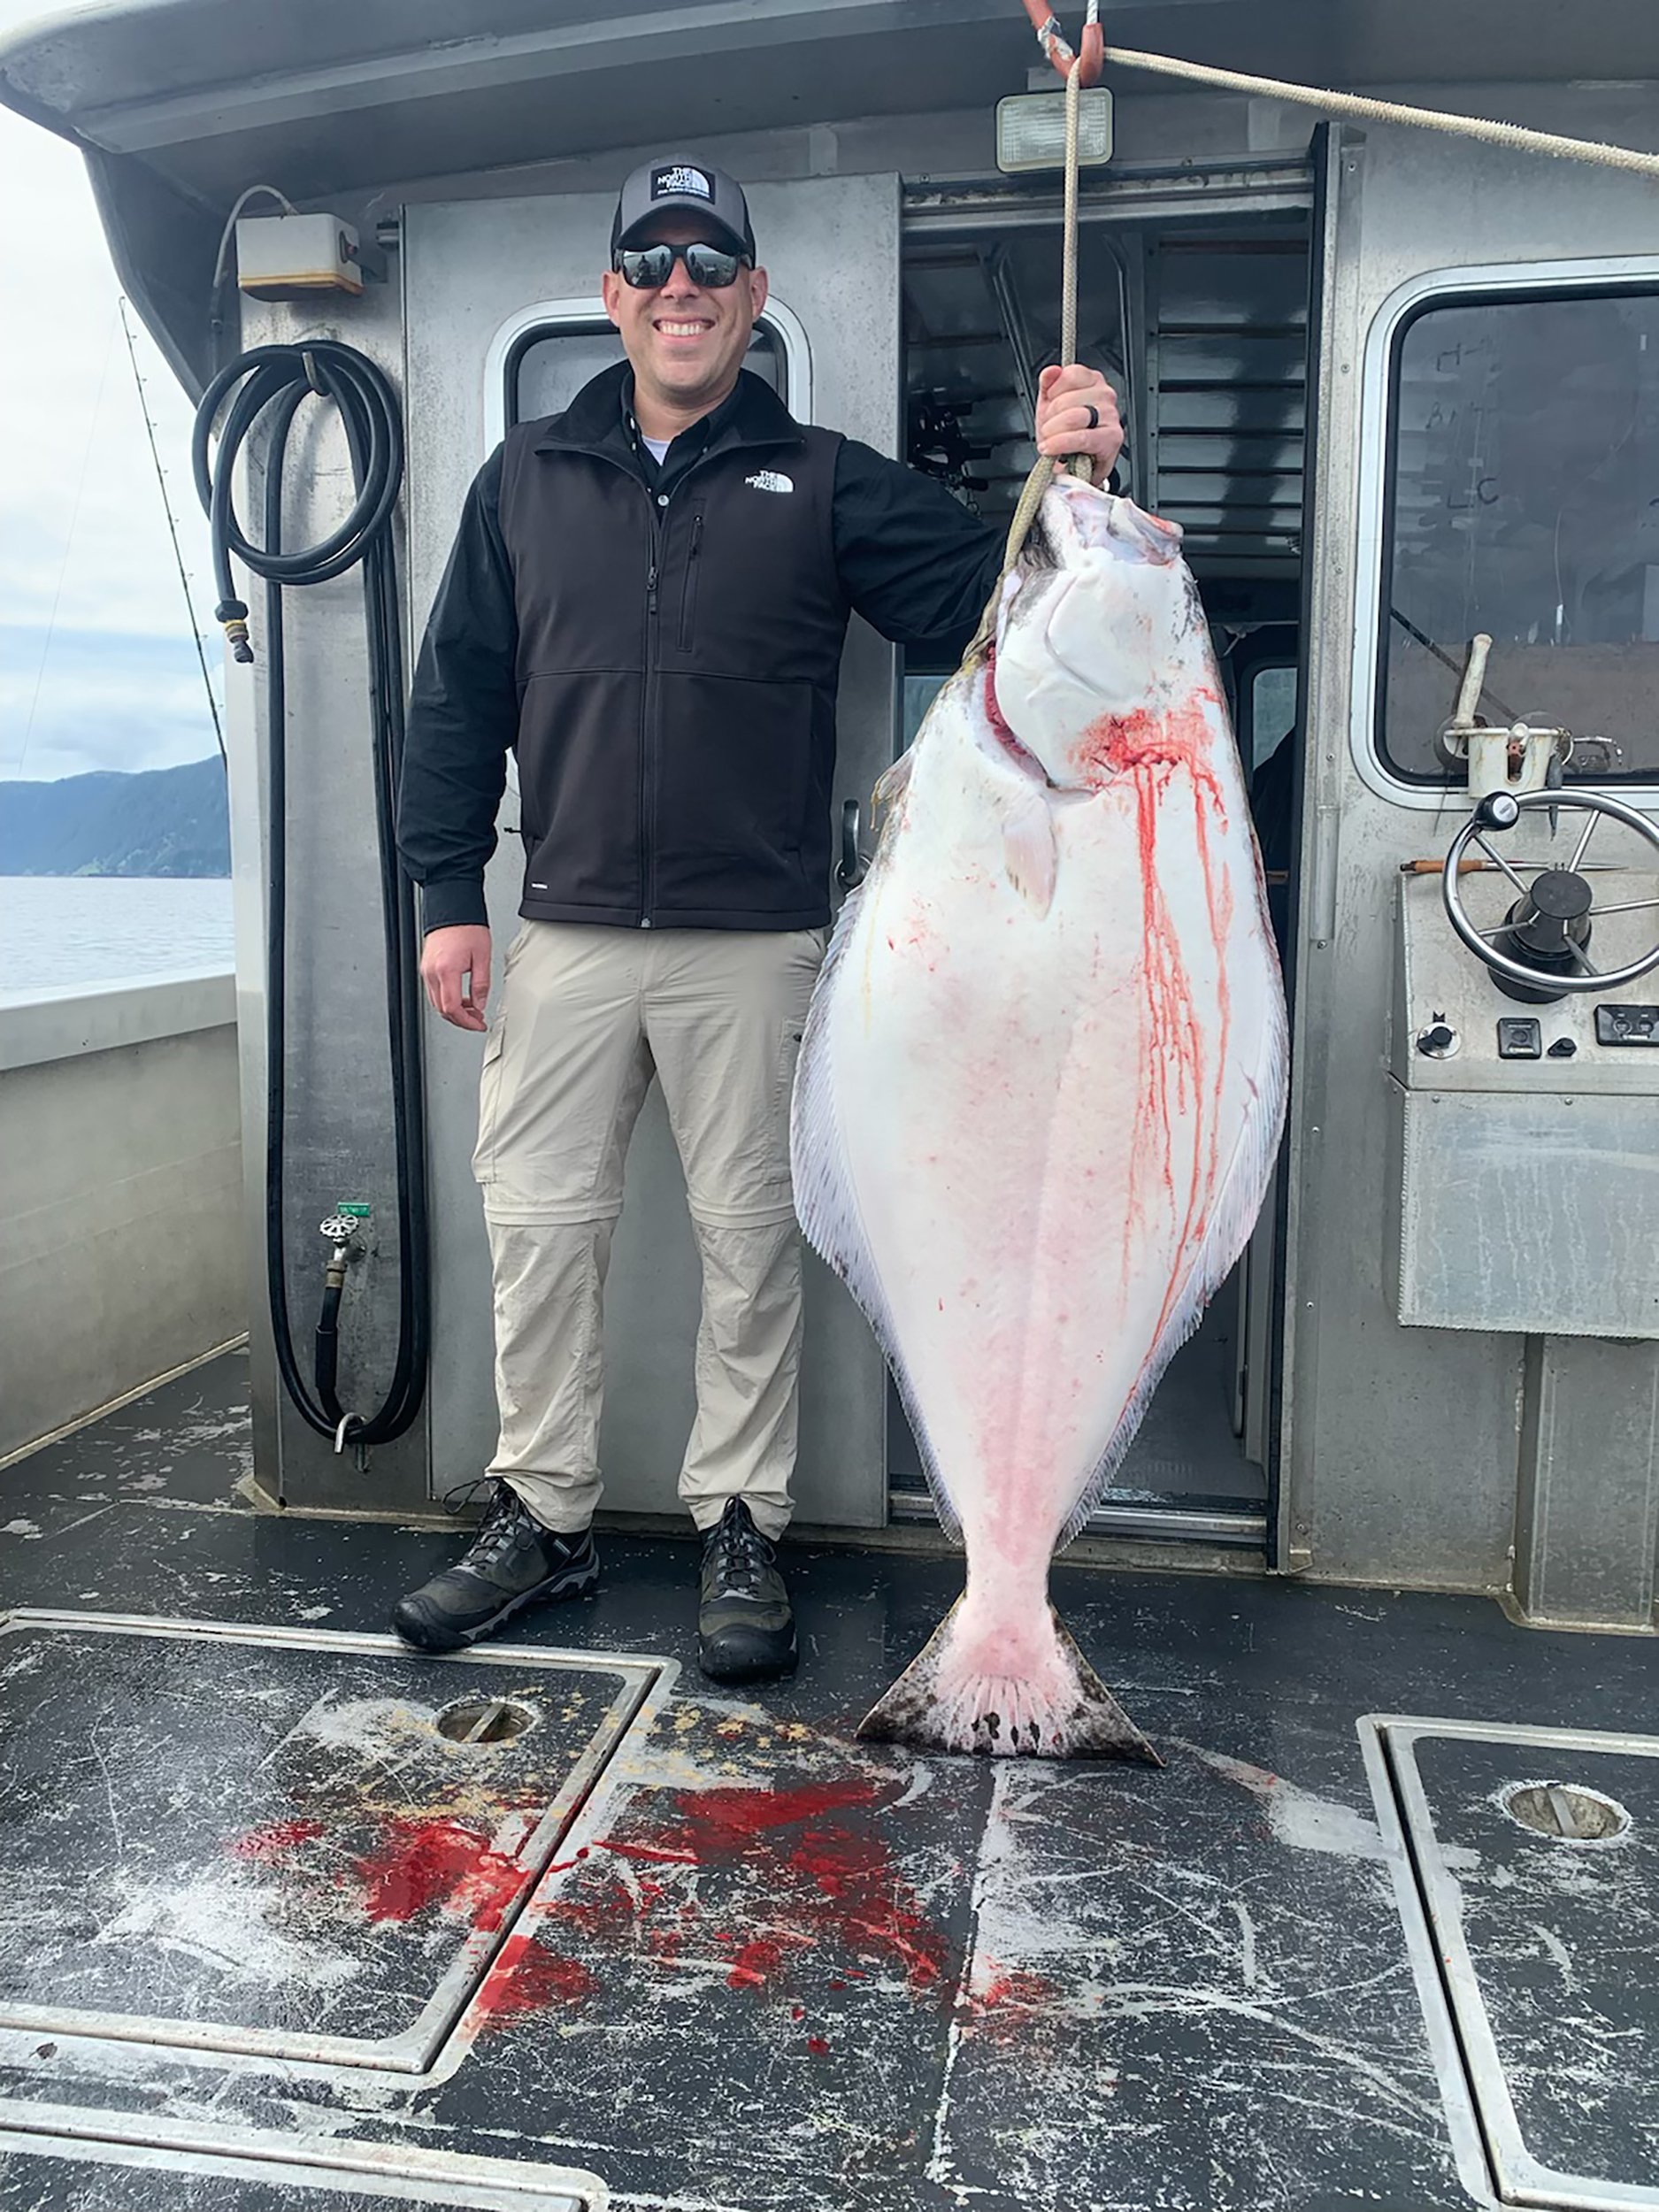 Halibut fishing in Alaska